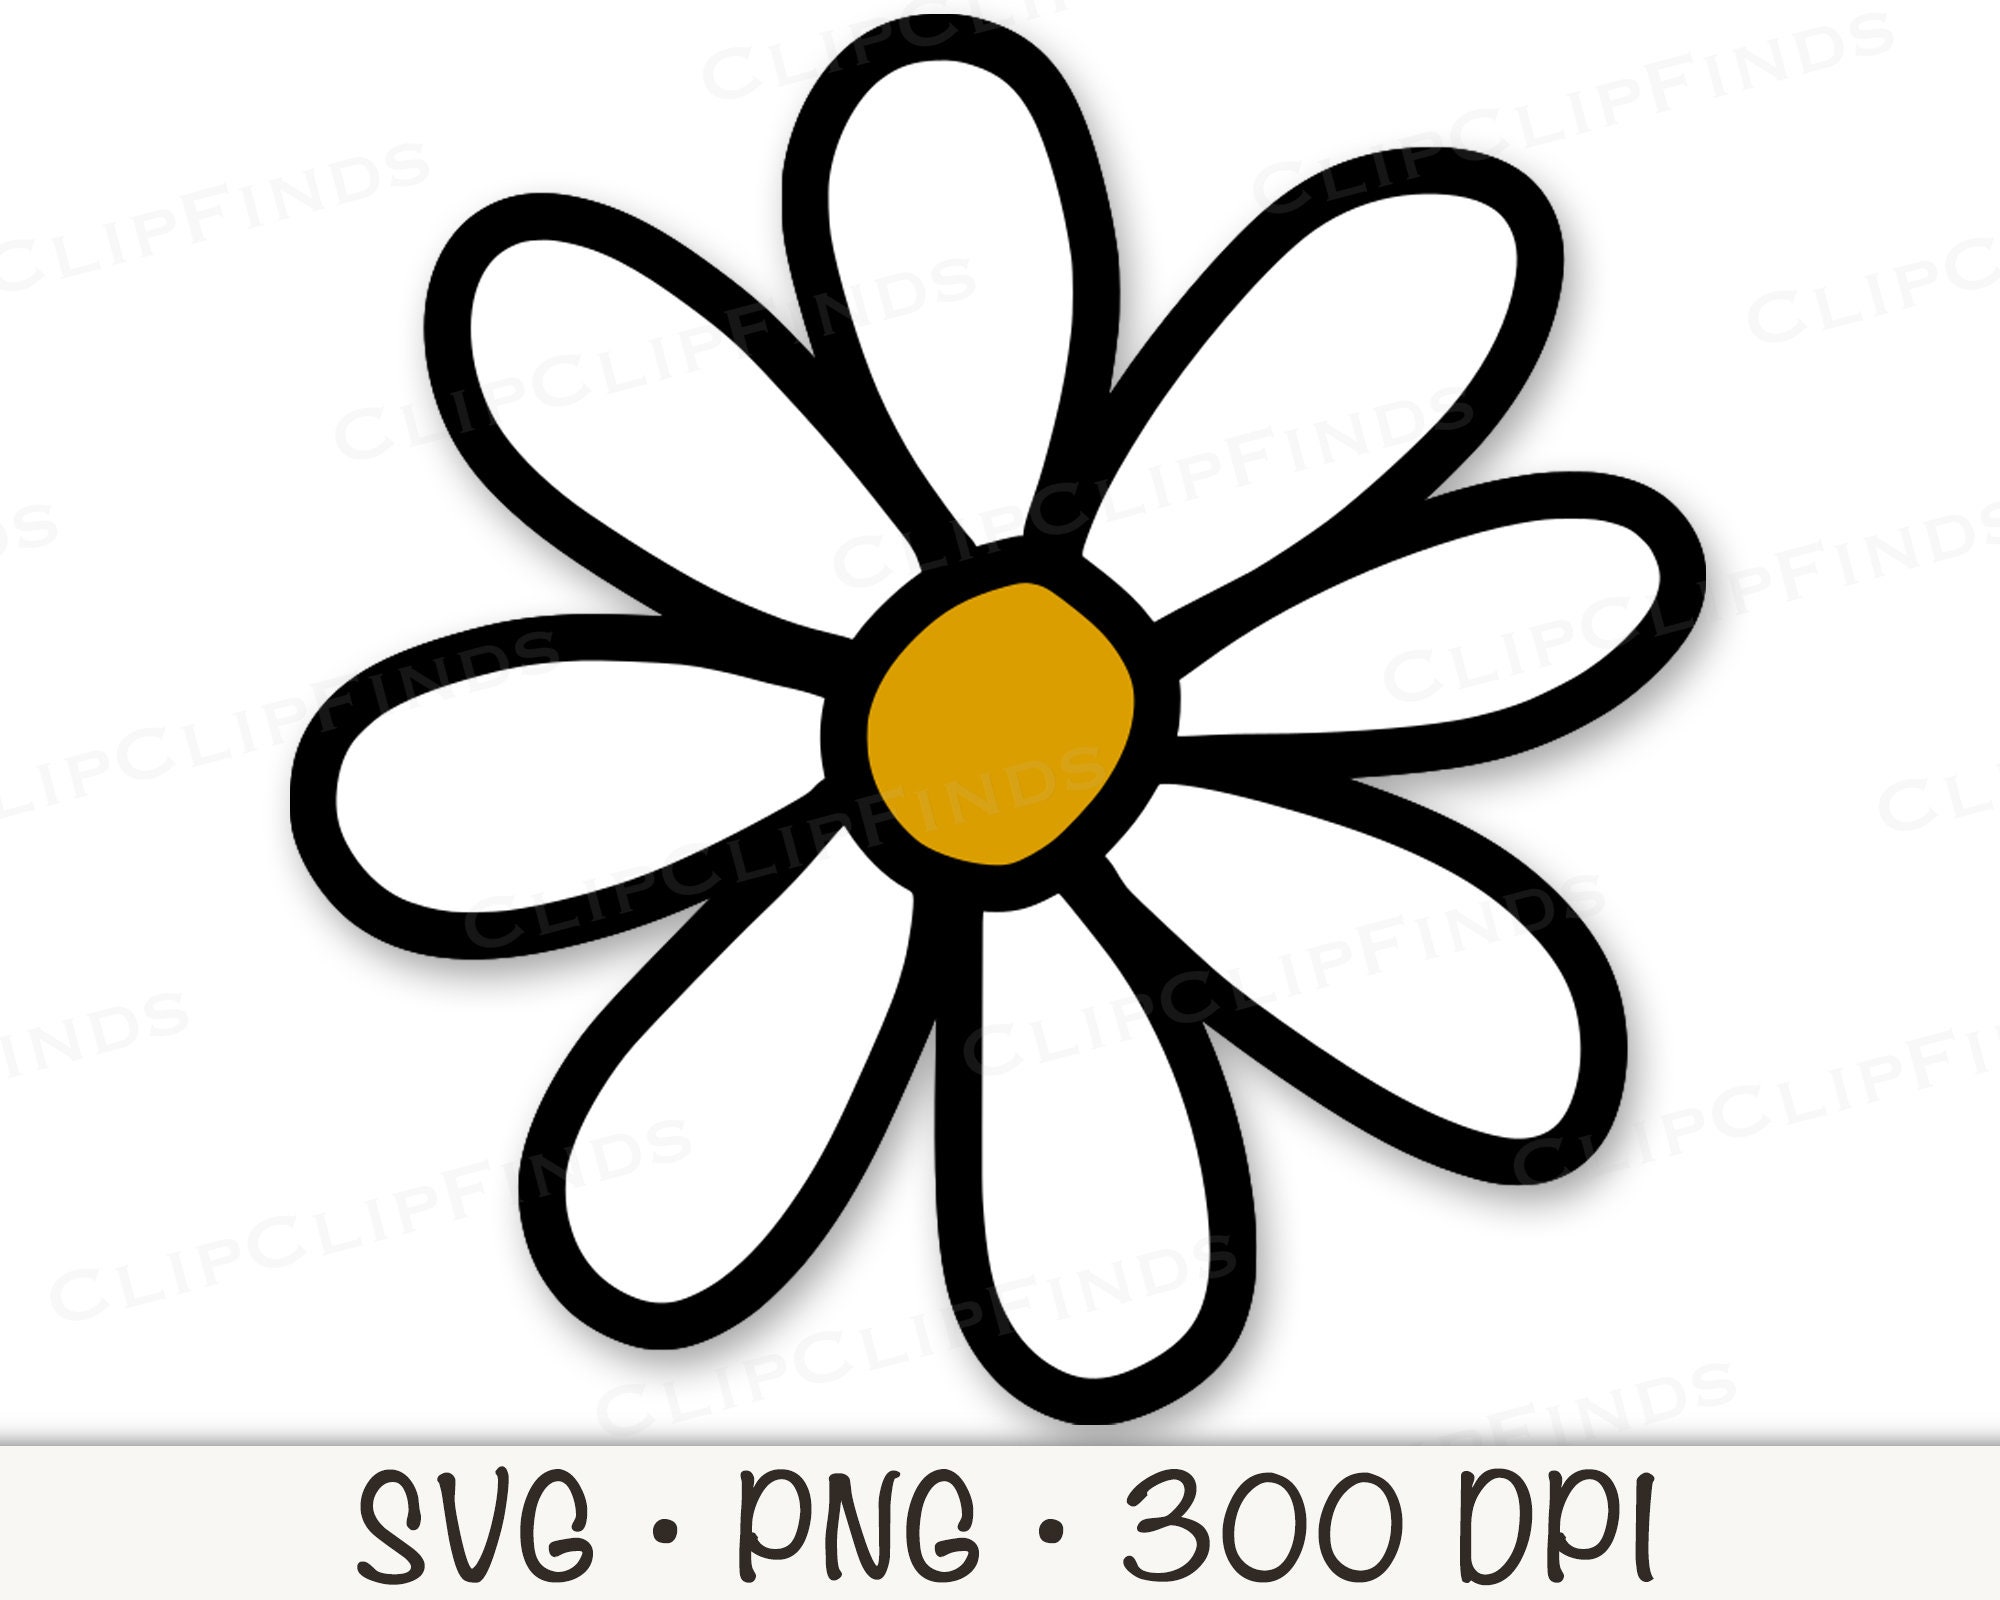 Rose Svg PNG Transparent Images Free Download, Vector Files